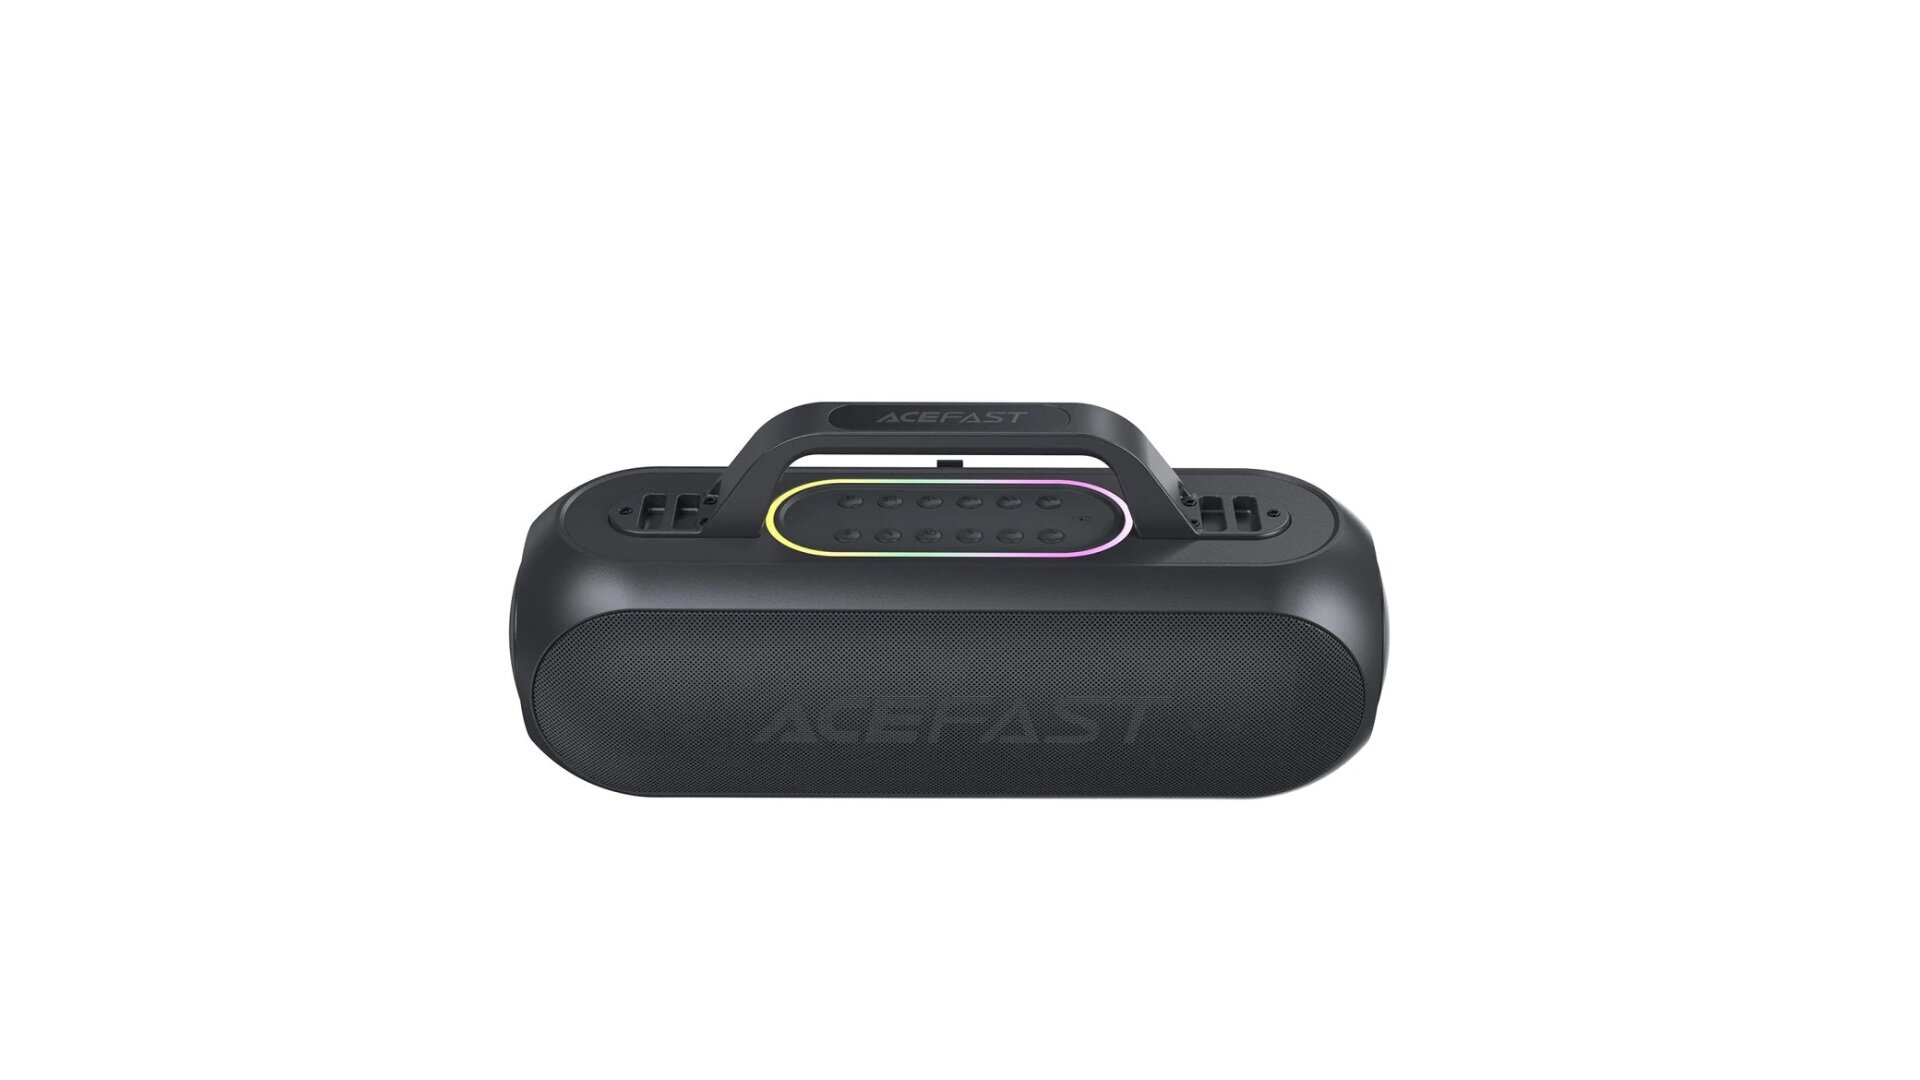 Караоке станция ACEFAST Portable Karaoke Speaker 200W 18000 mAh + 2 беспроводных микрофона Черный